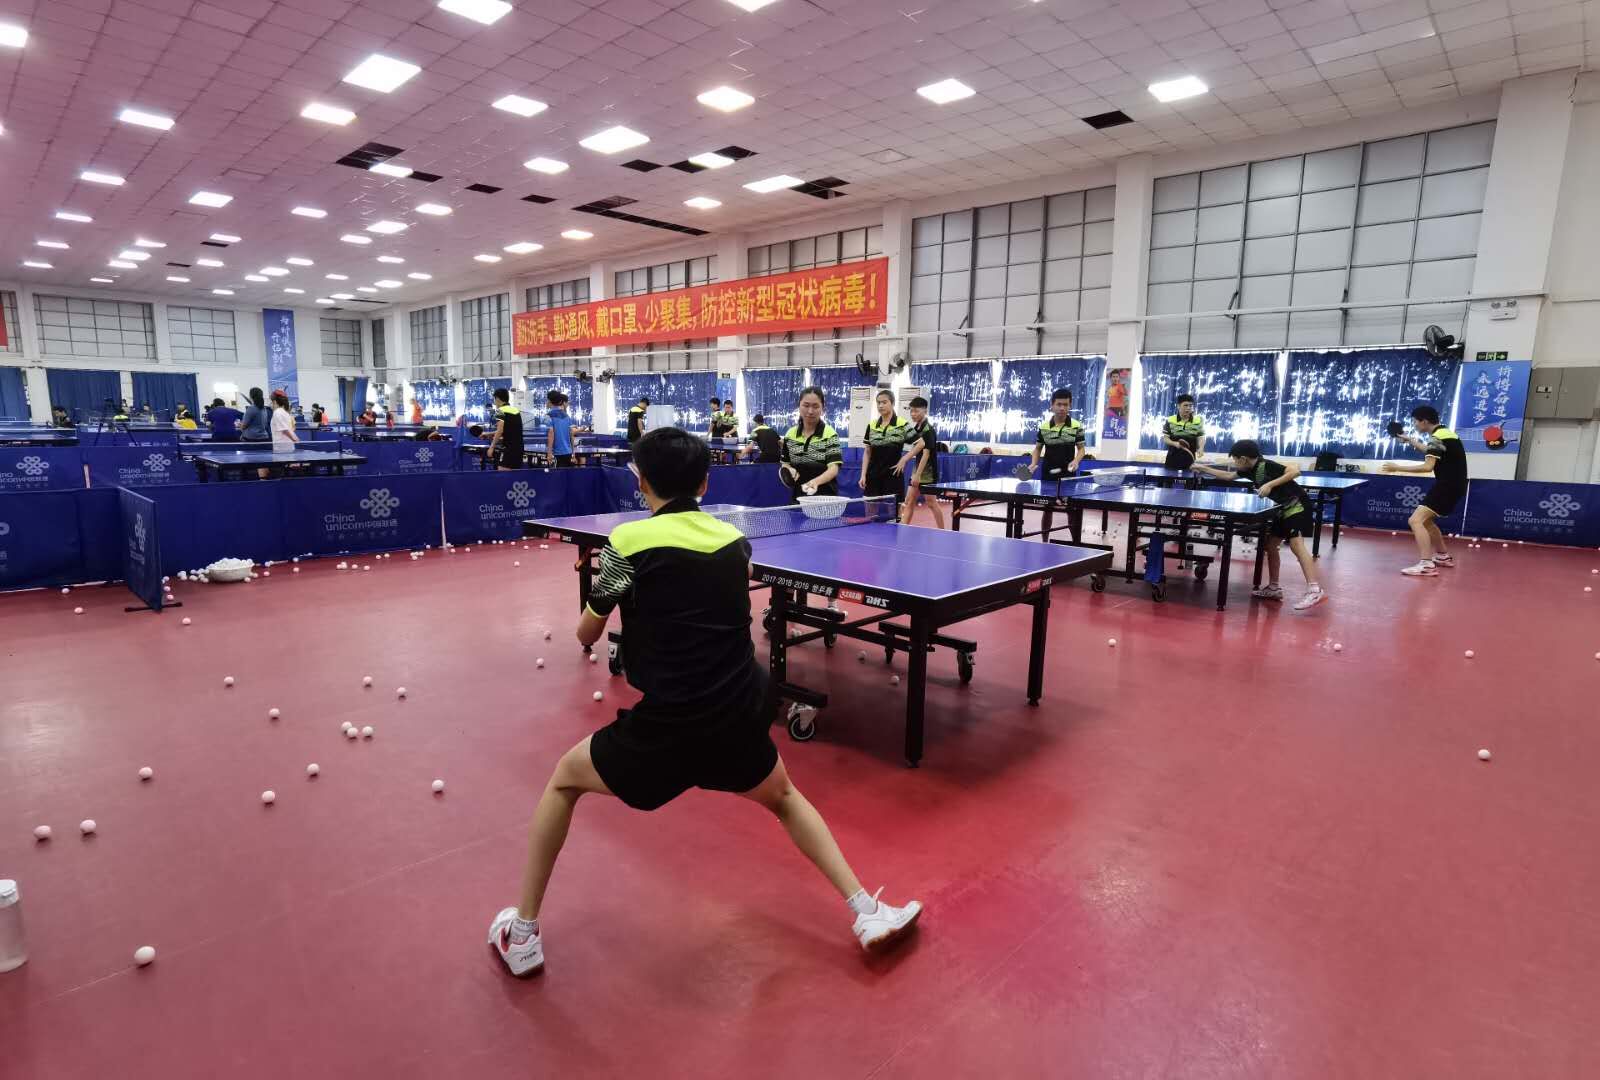 我校运动队在“第11届中国大学生阳光体育乒乓球比赛”中取得佳绩